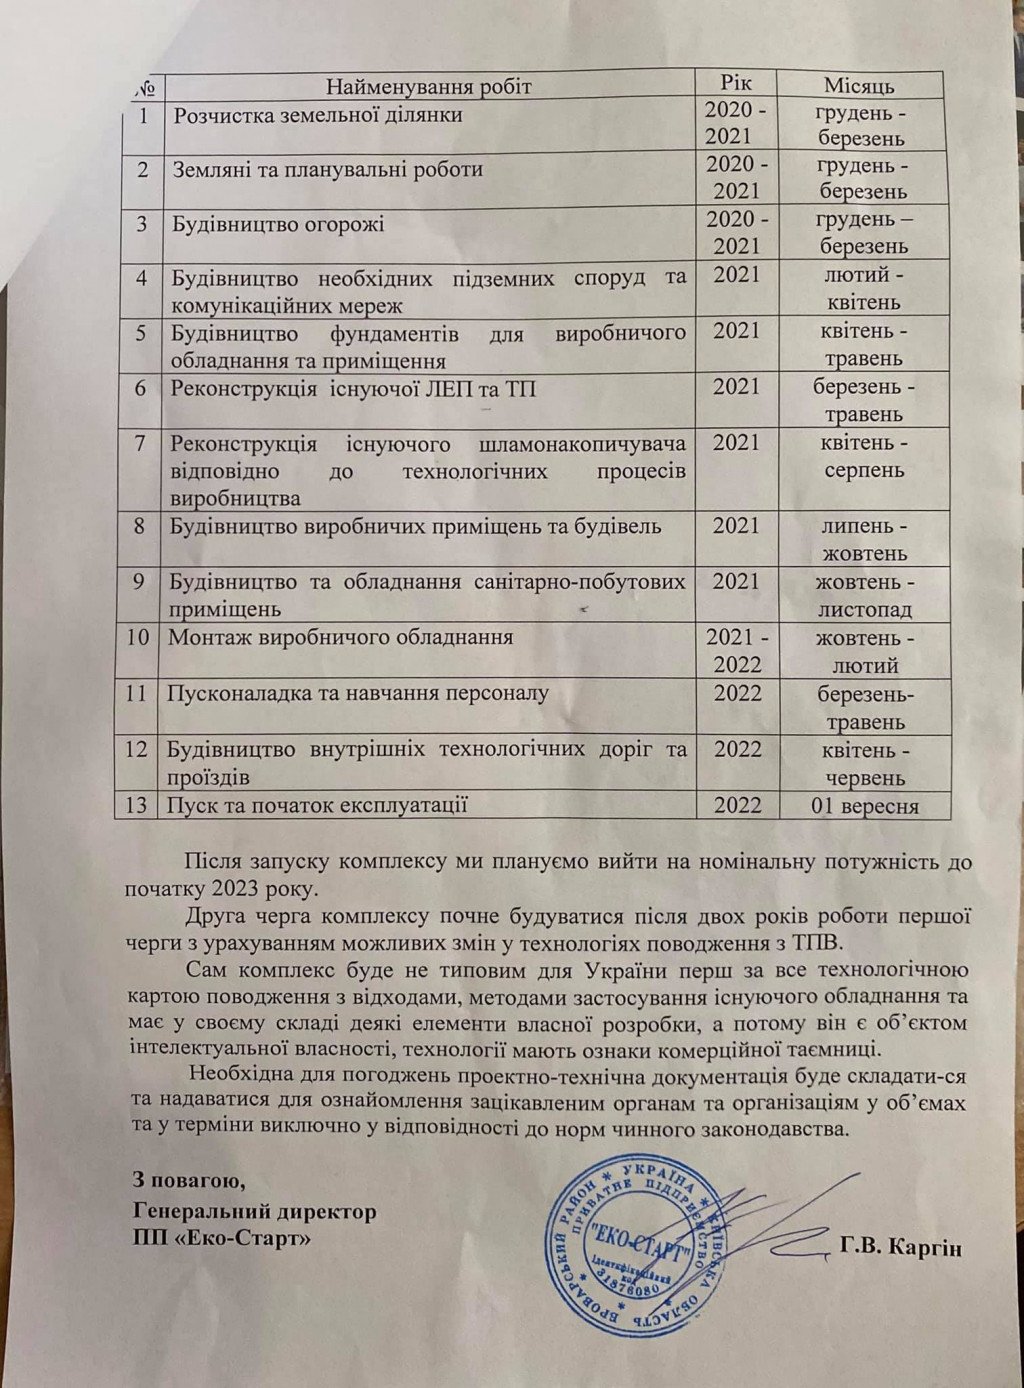 Под Киевом запланировано строительство современного сортировочно-перерабатывающего комплекса (документ)